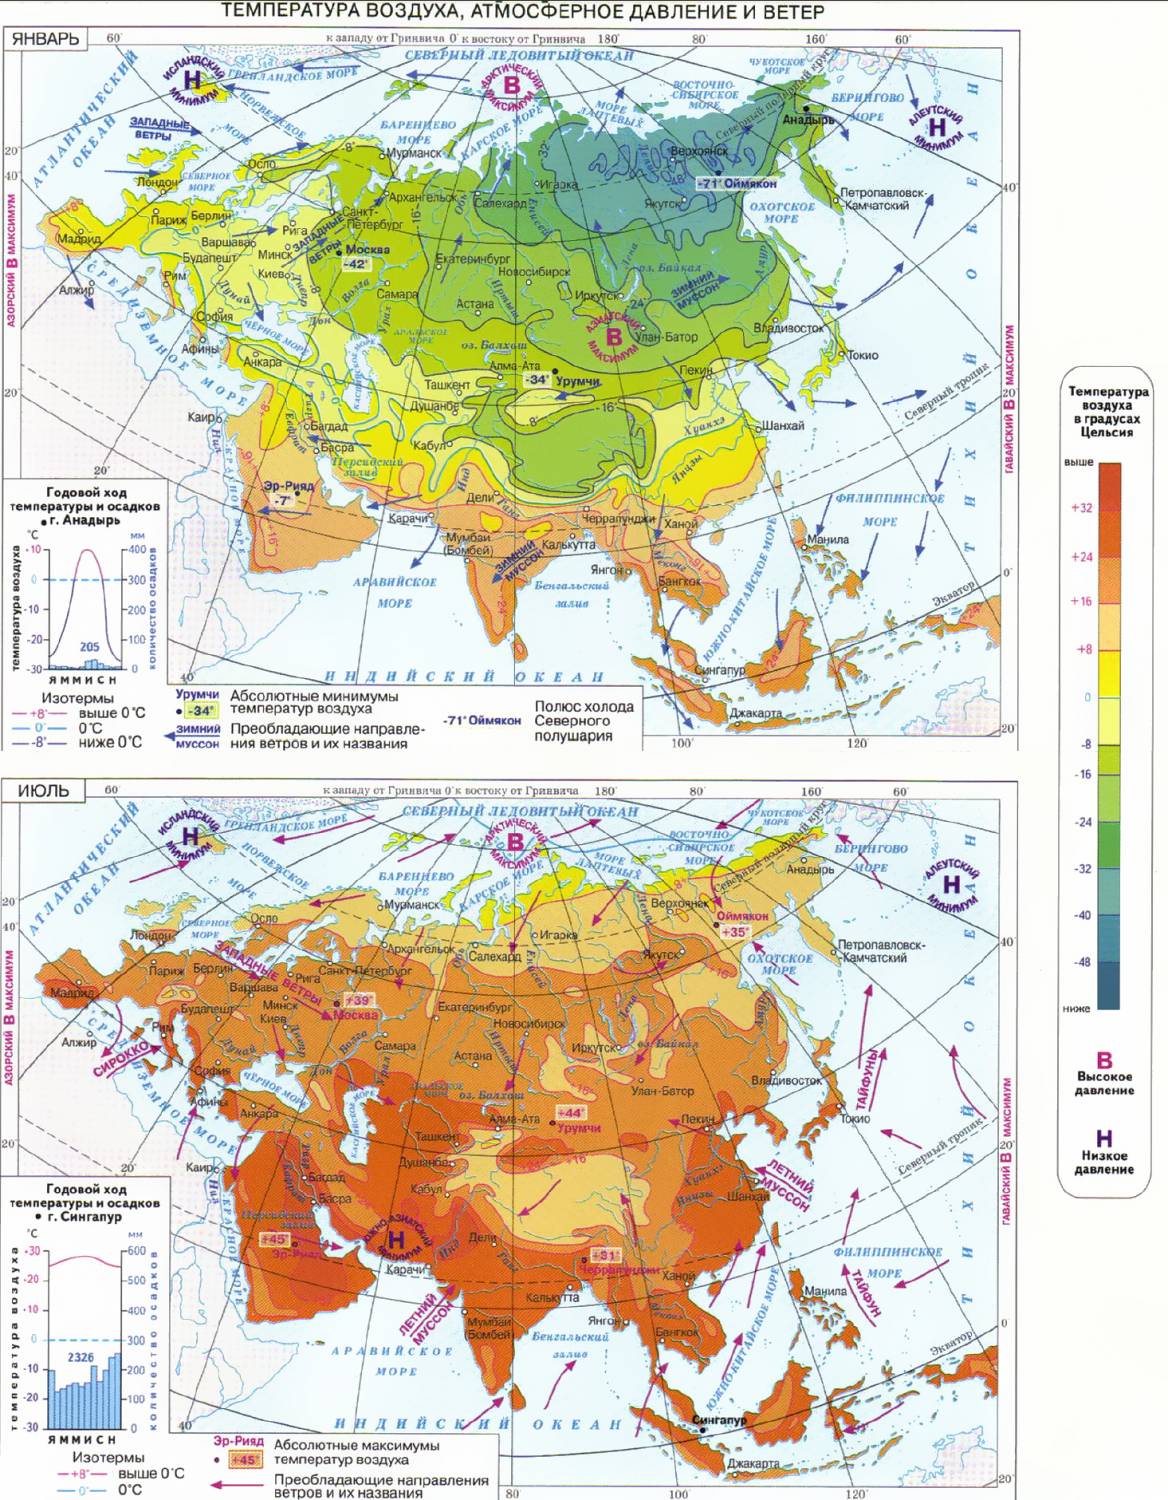 Температура атмосферного воздуха, давлени и ветры в теплый и холодный сезоны в Евразии